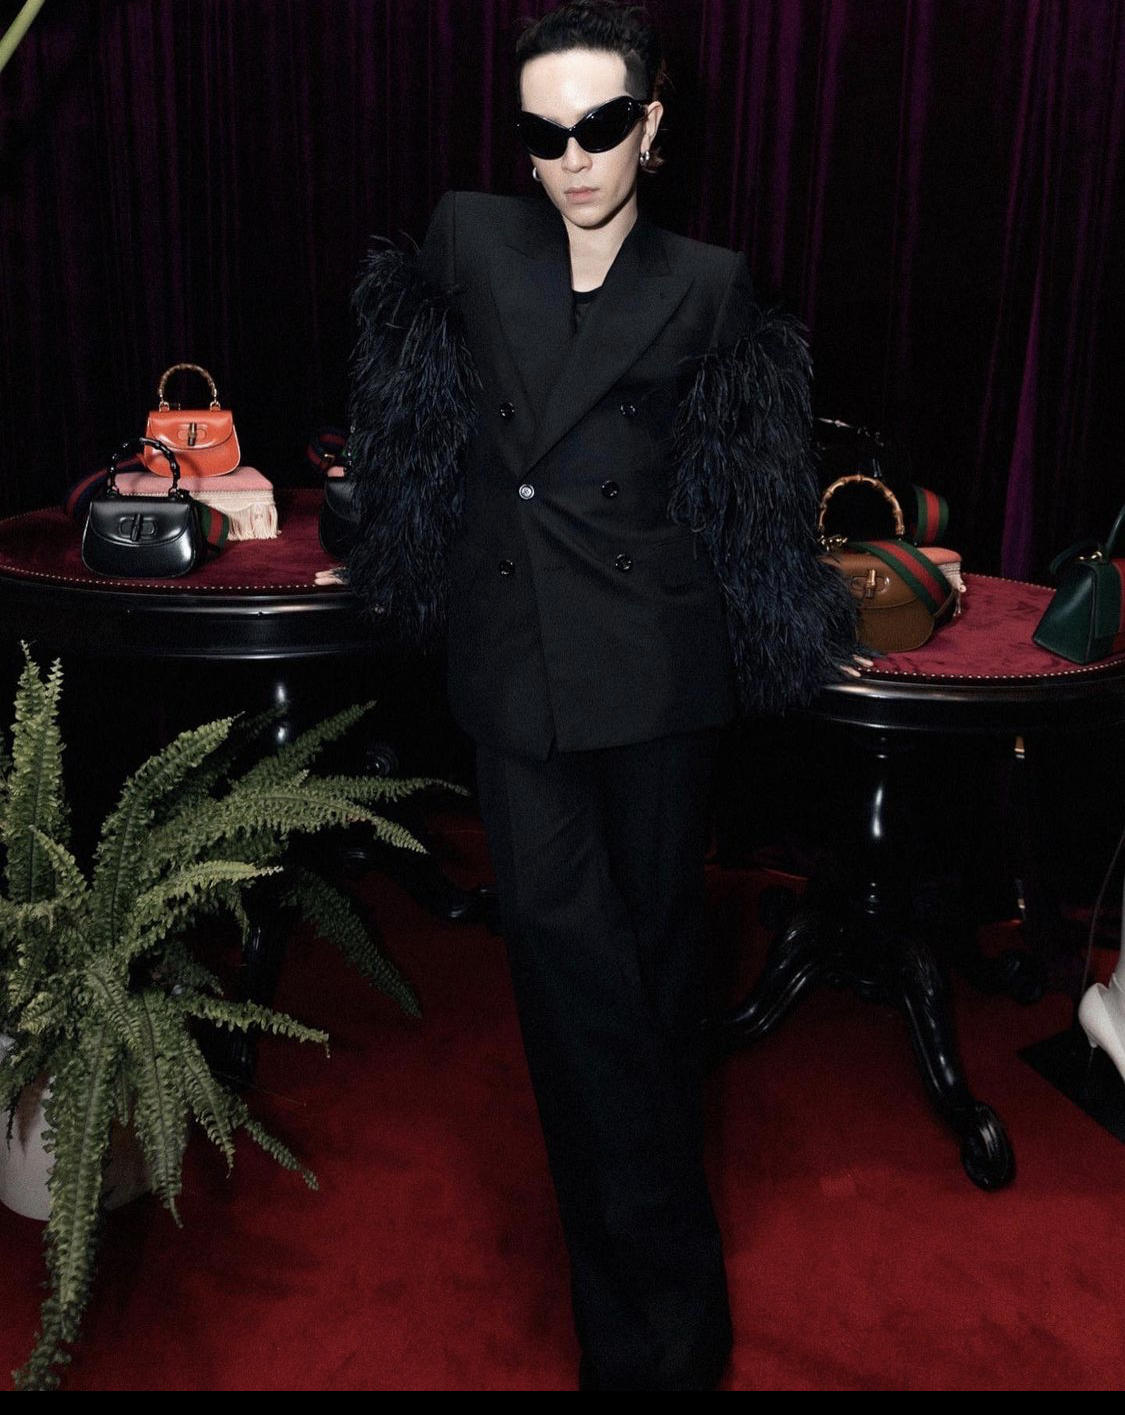 Kelbin Lei vẫn trung thành với thời trang phi giới tính, stylist sinh năm 1990 diện suit đen phối lông ở tay áo 'chanh sả'.